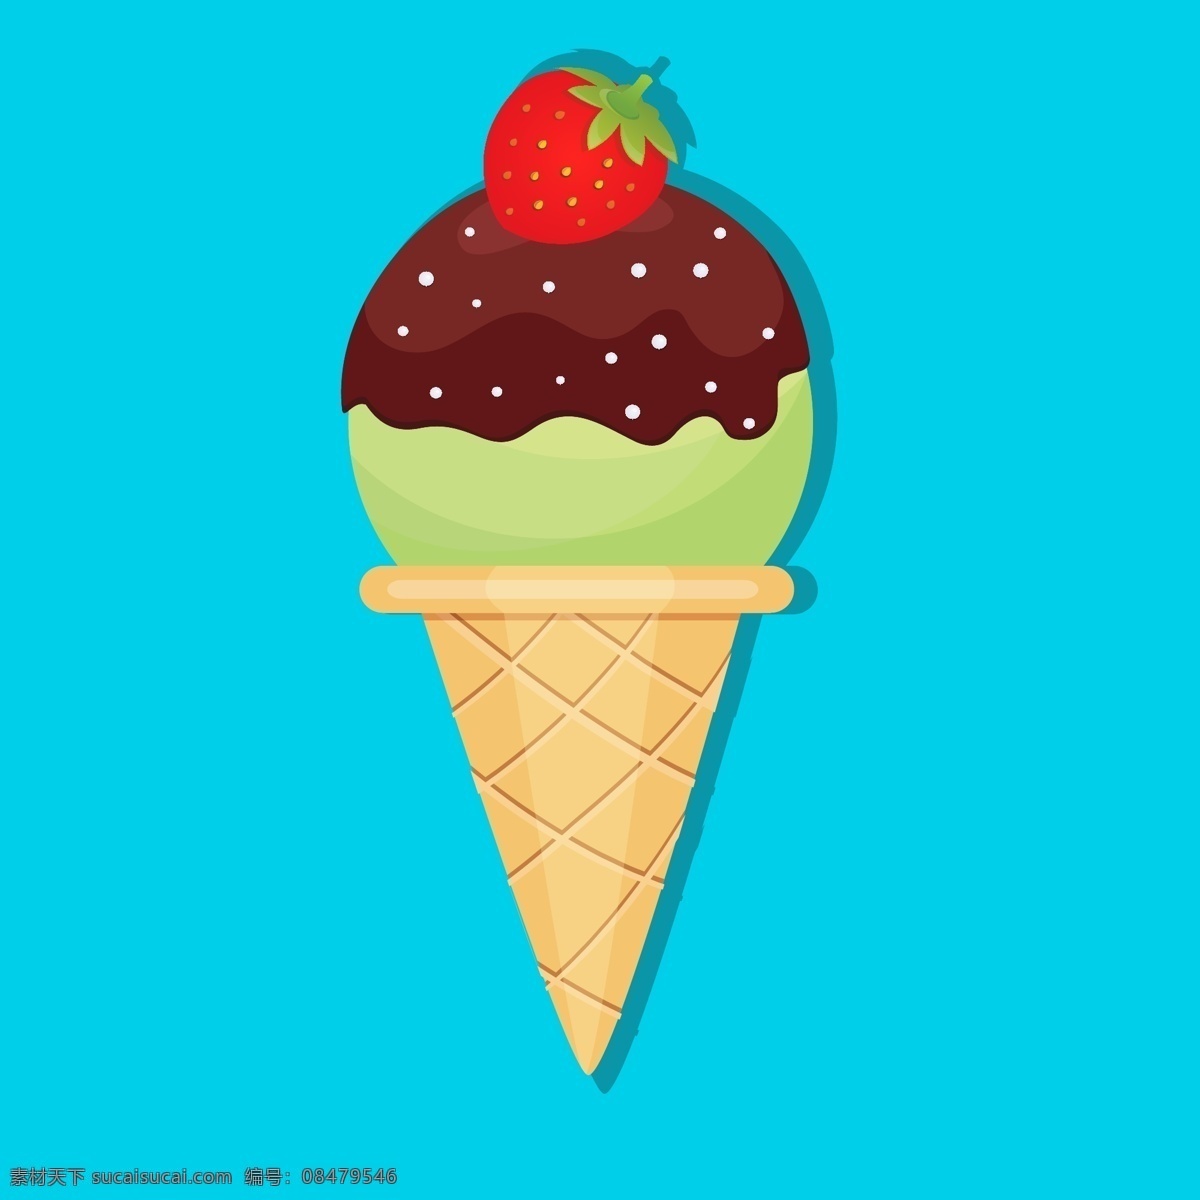 矢量冰淇淋 矢量雪糕 矢量甜筒 彩色雪糕 彩色甜筒 卡通冰淇淋 冰激凌 融合冰淇淋 食物 生活百科 餐饮美食